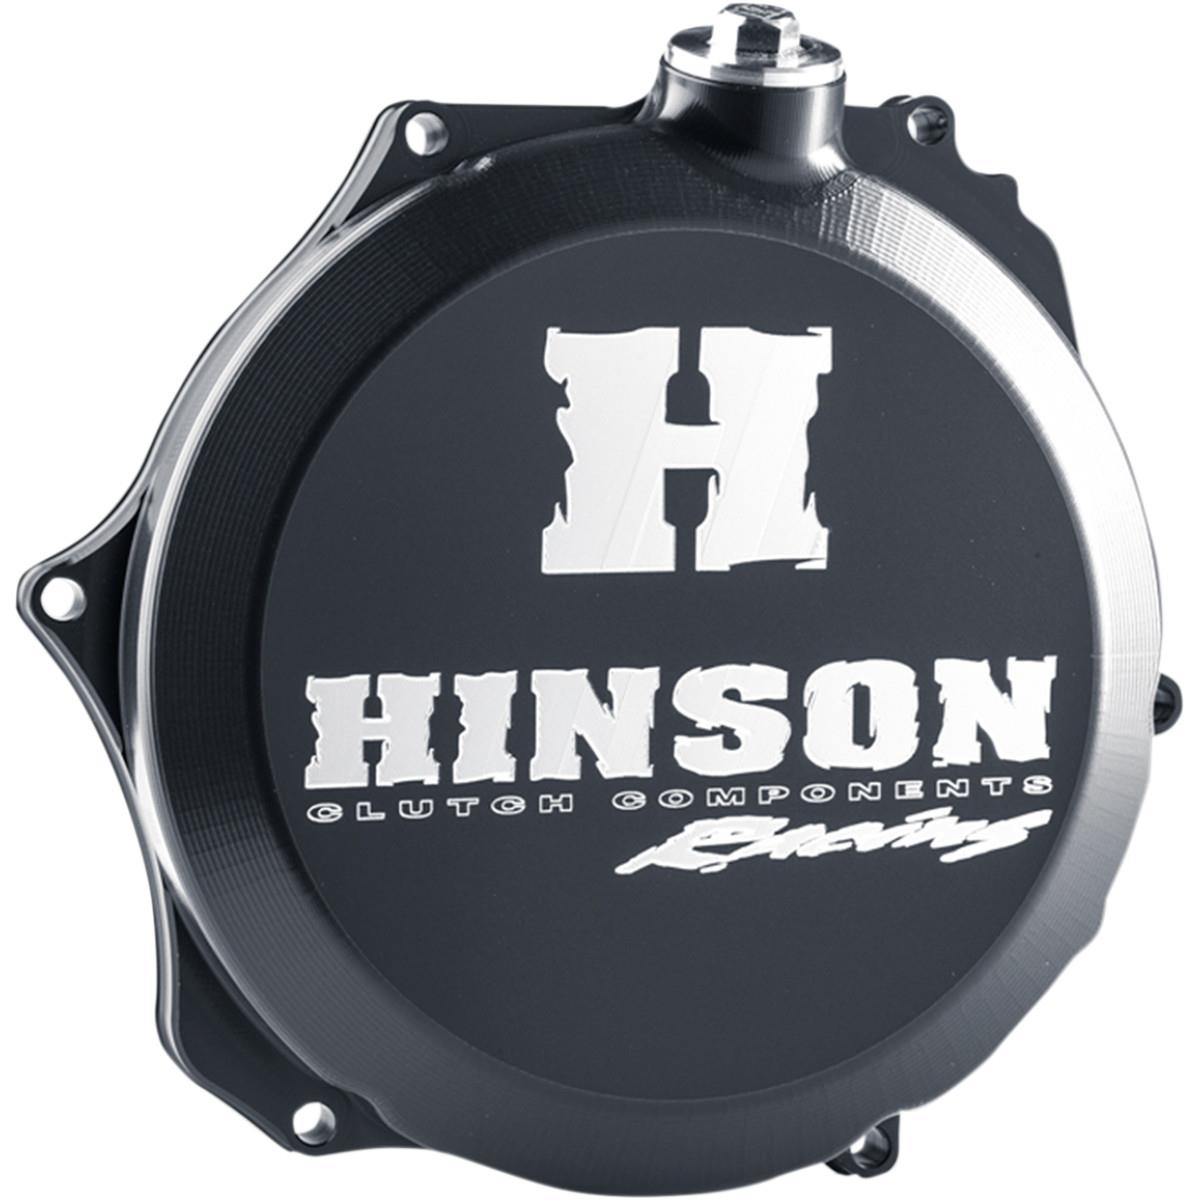 Hinson Clutch Cover  KTM SX 125/150 16-18, Husqvarna TC 125 16-18, TX 125 17-18